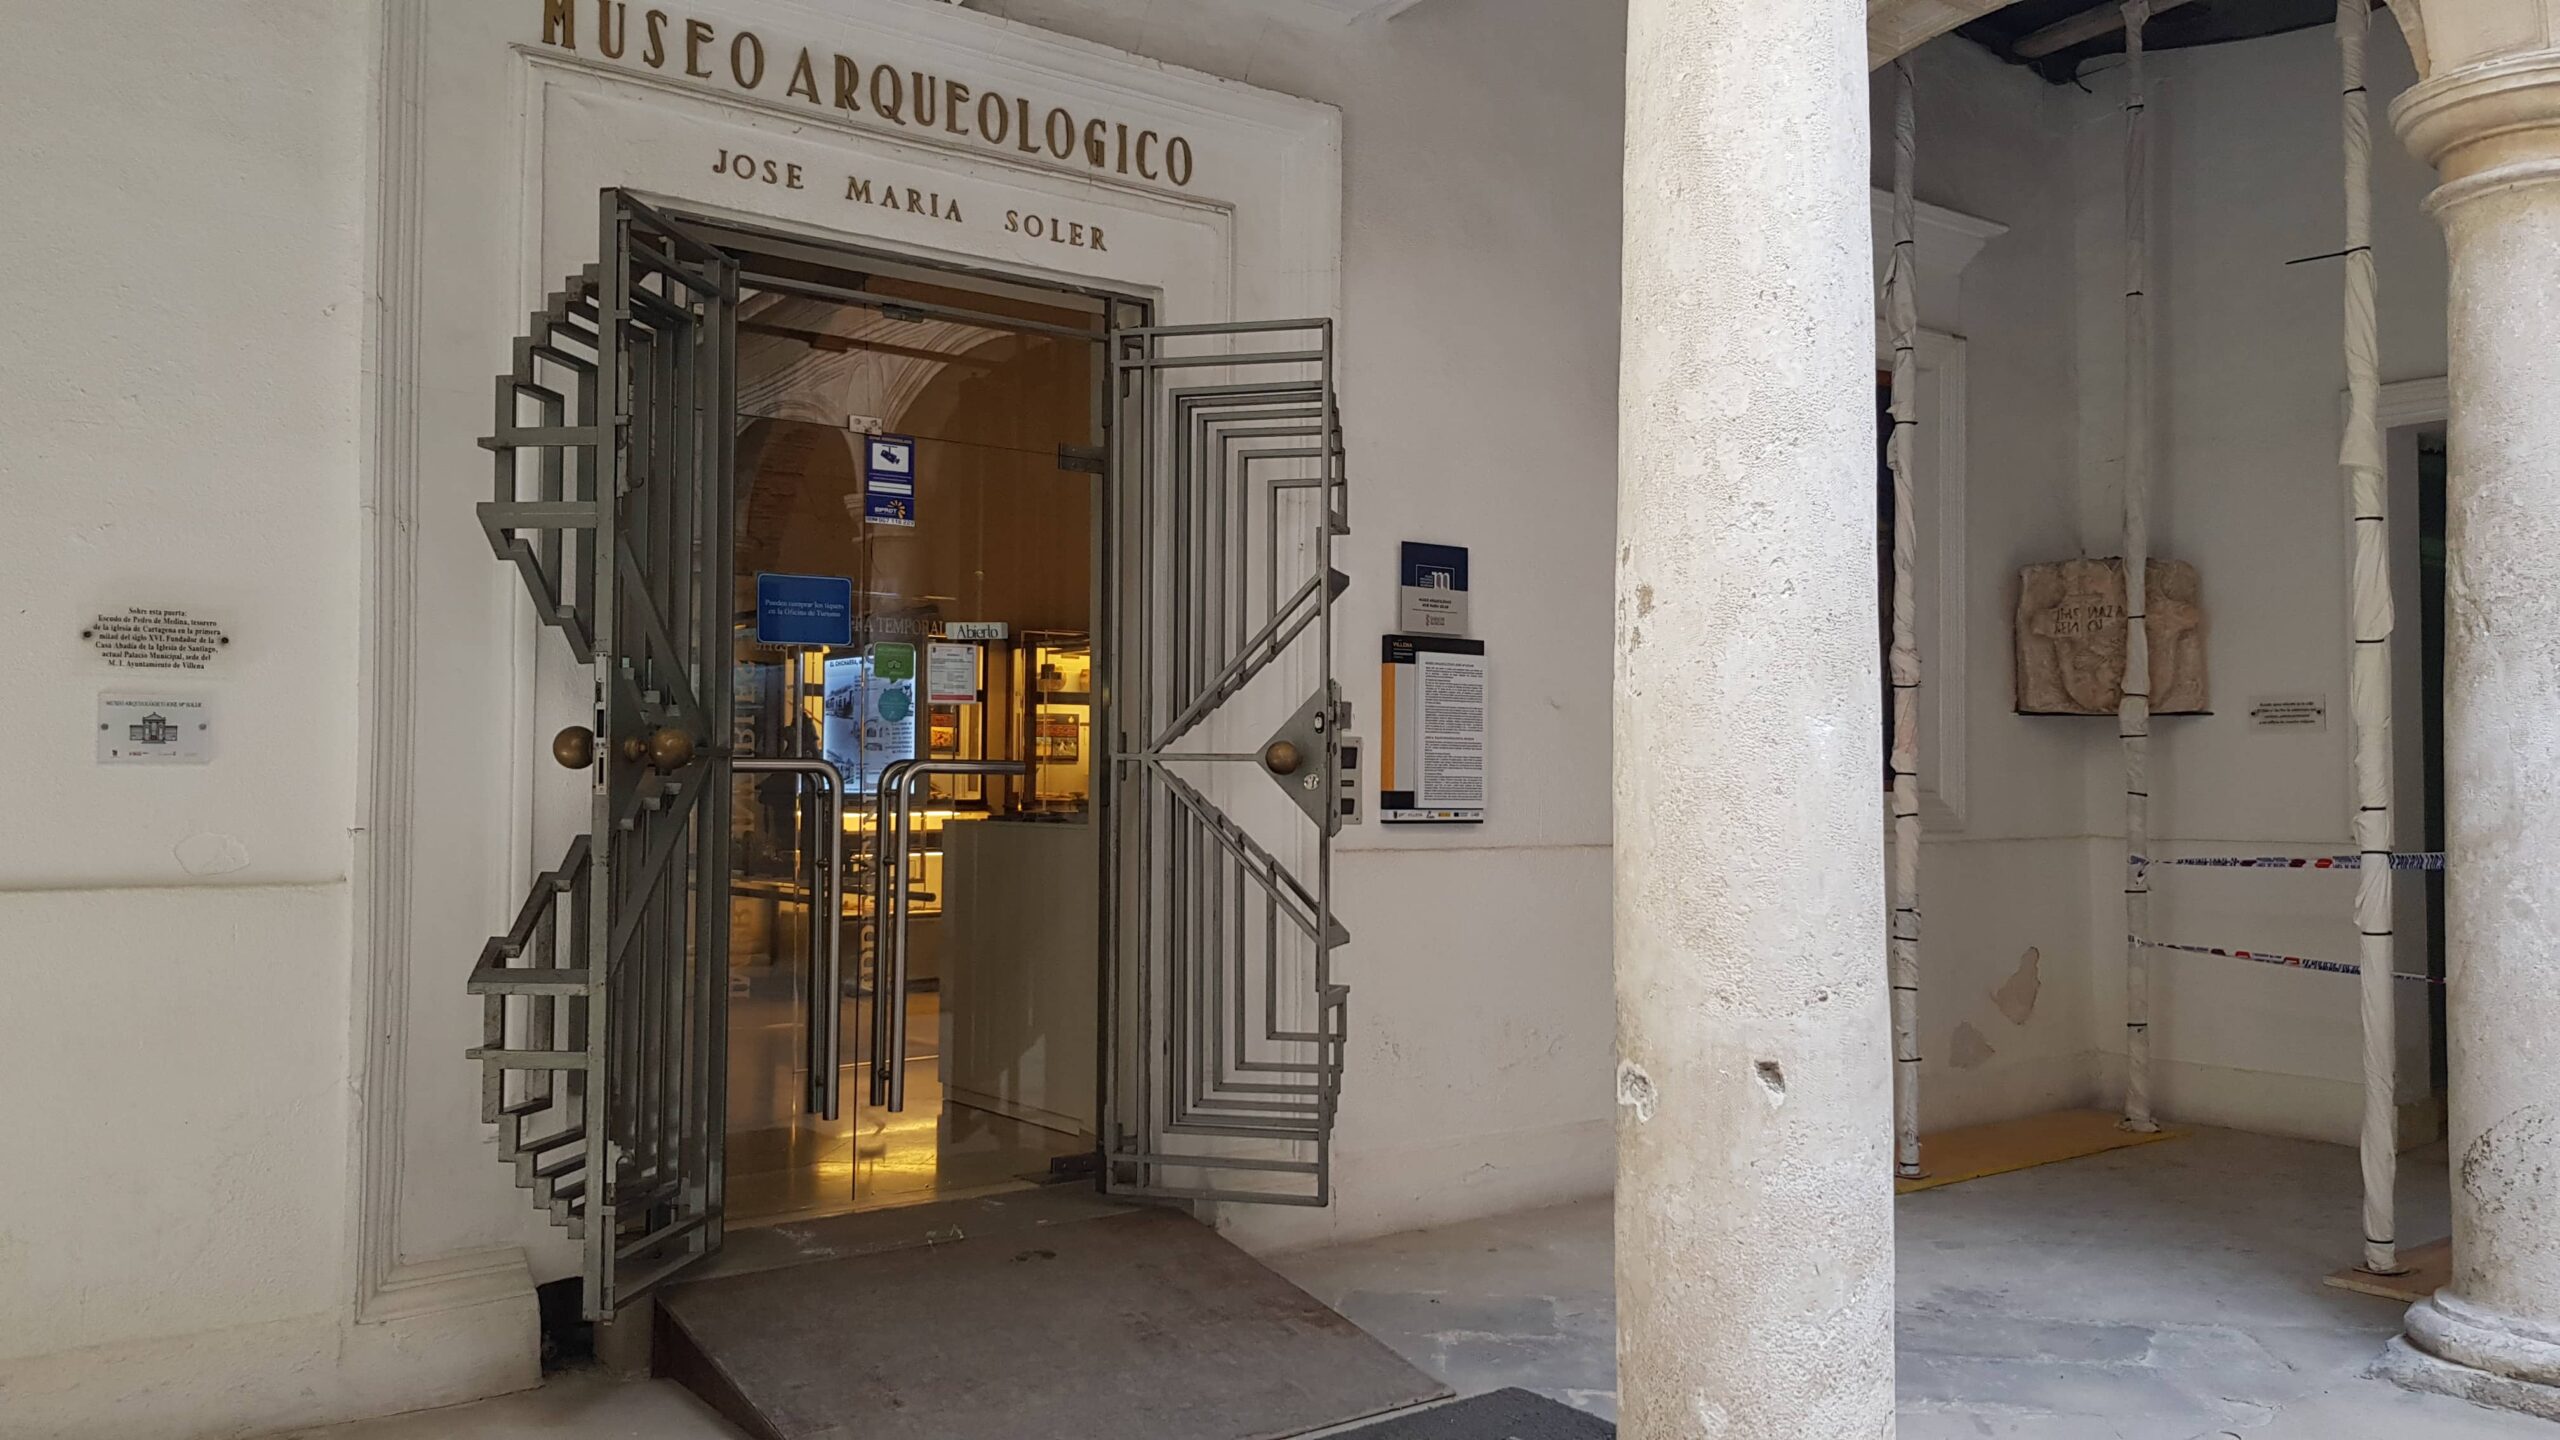 El Museo Arqueológico vuelve abrir sus puertas sin previo aviso, según denuncia el PP